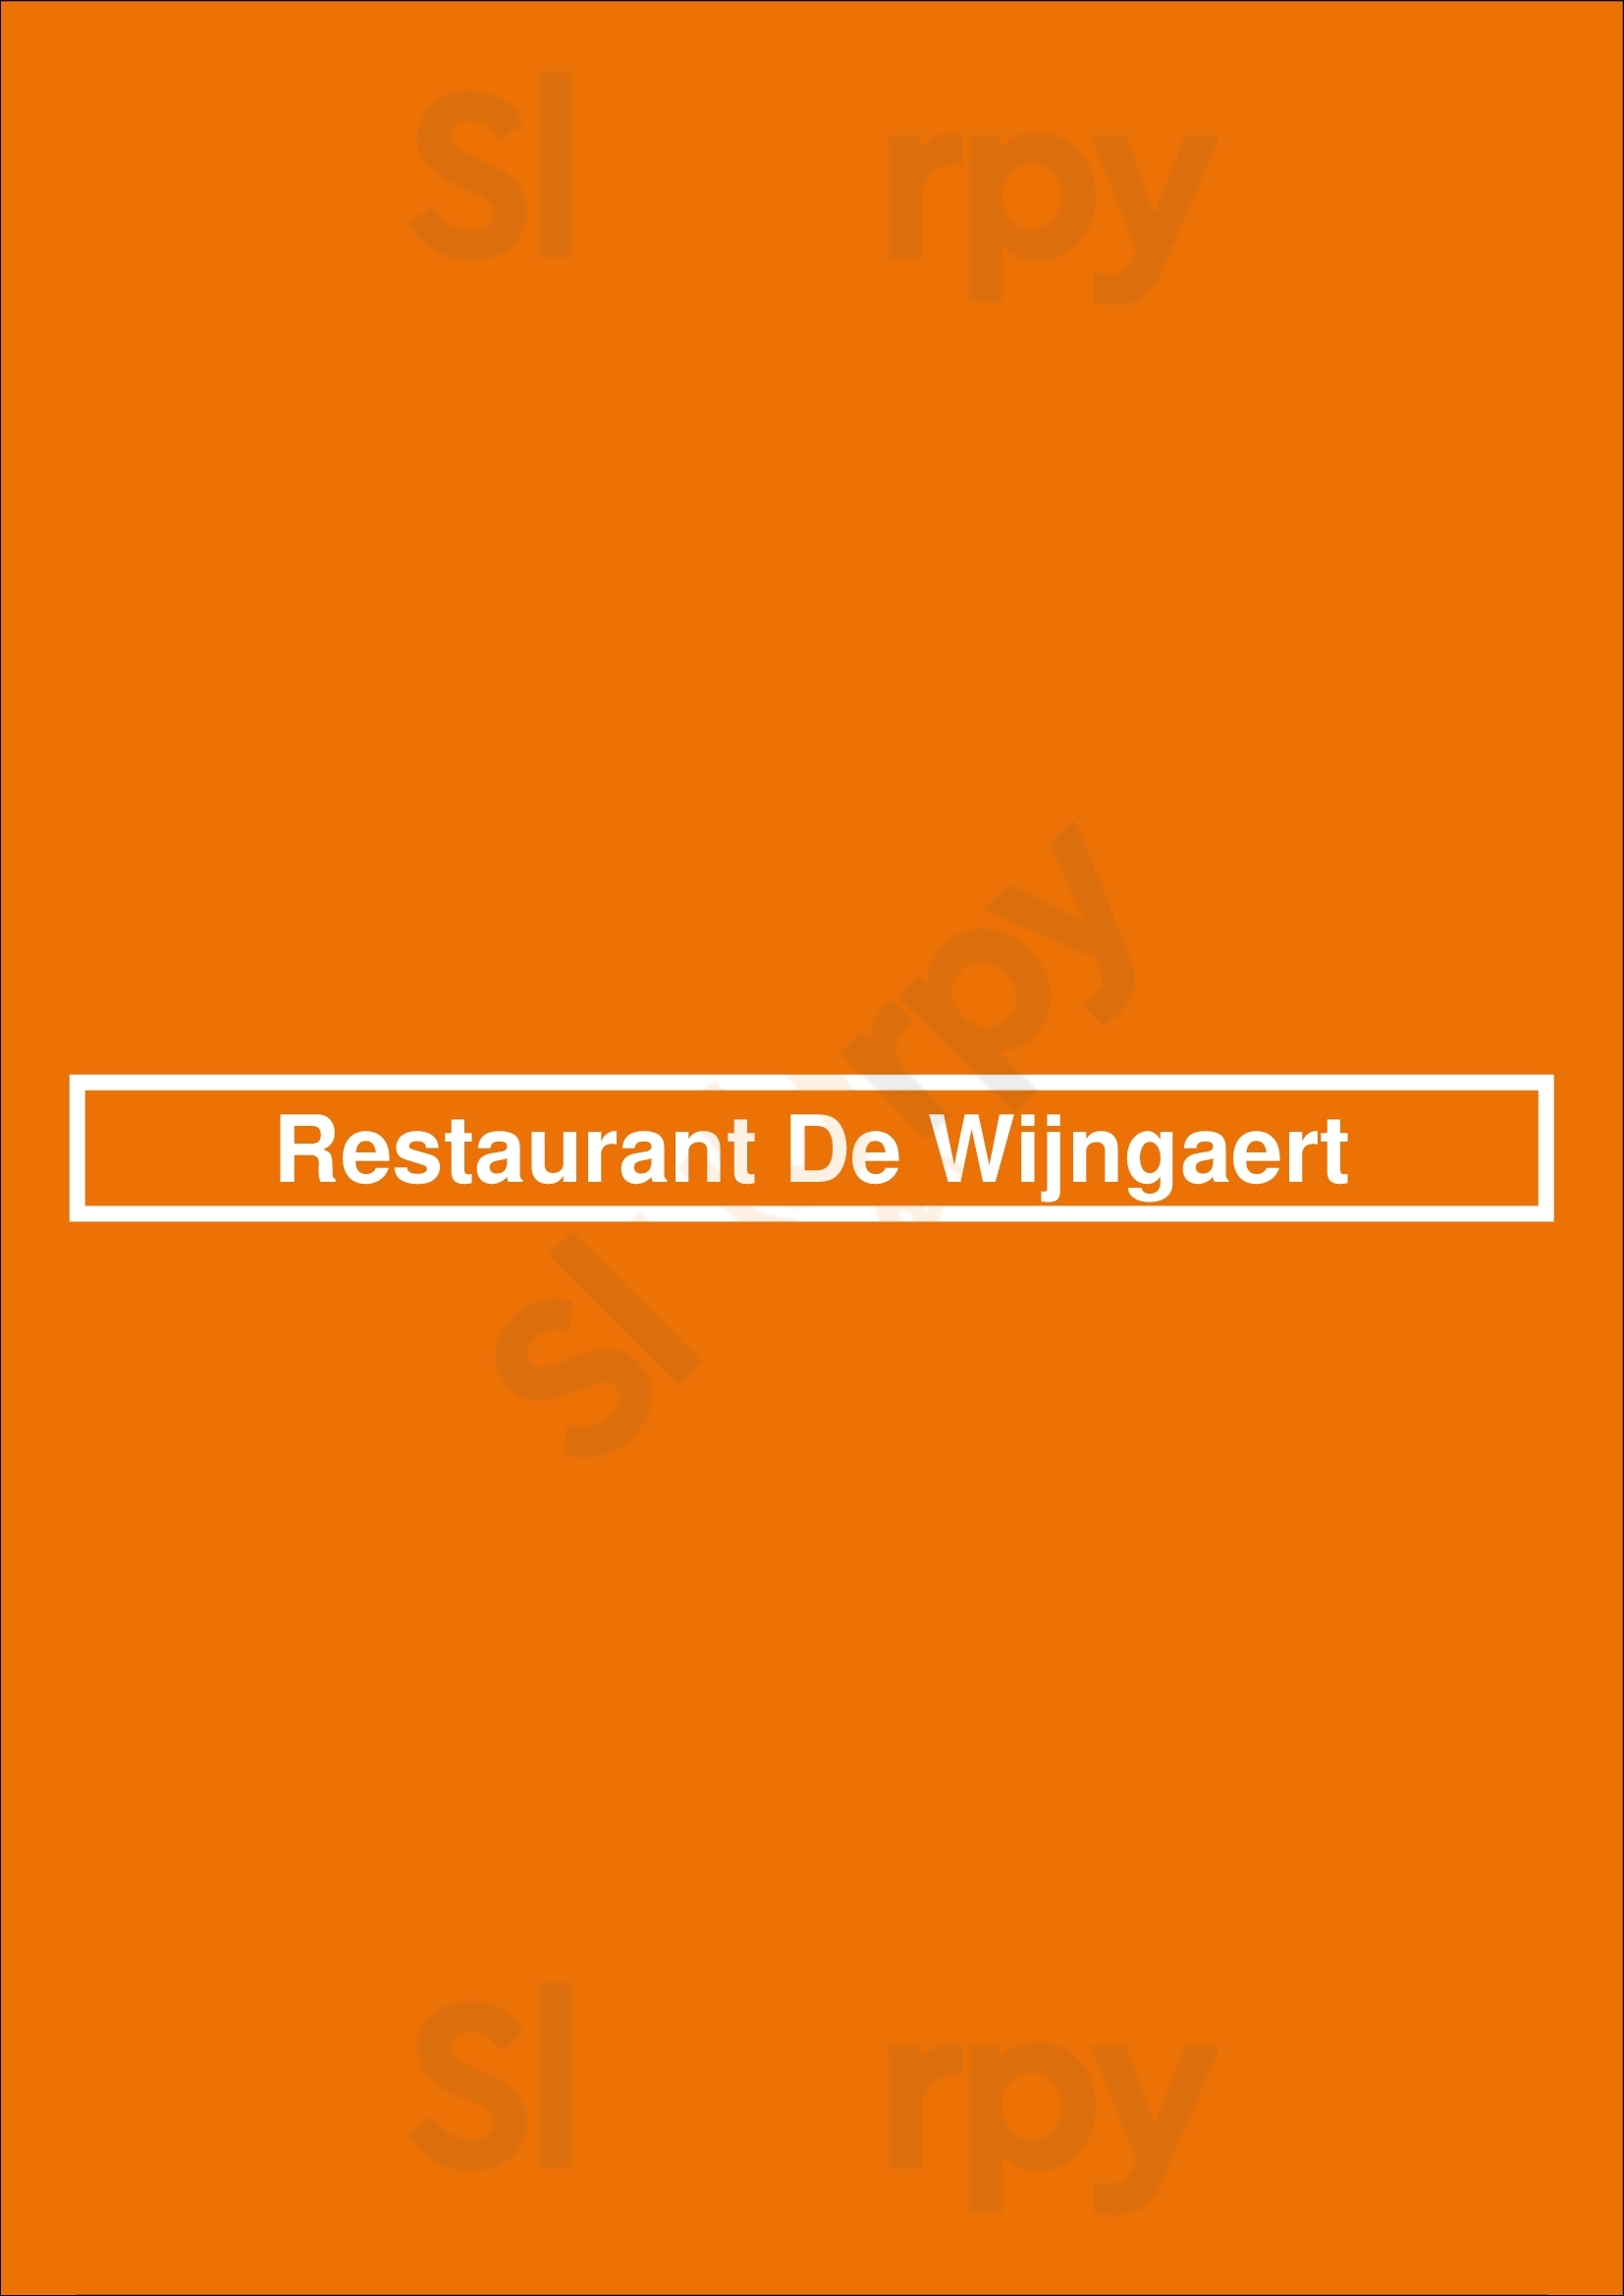 Restaurant De Wijngaert Bruges Menu - 1